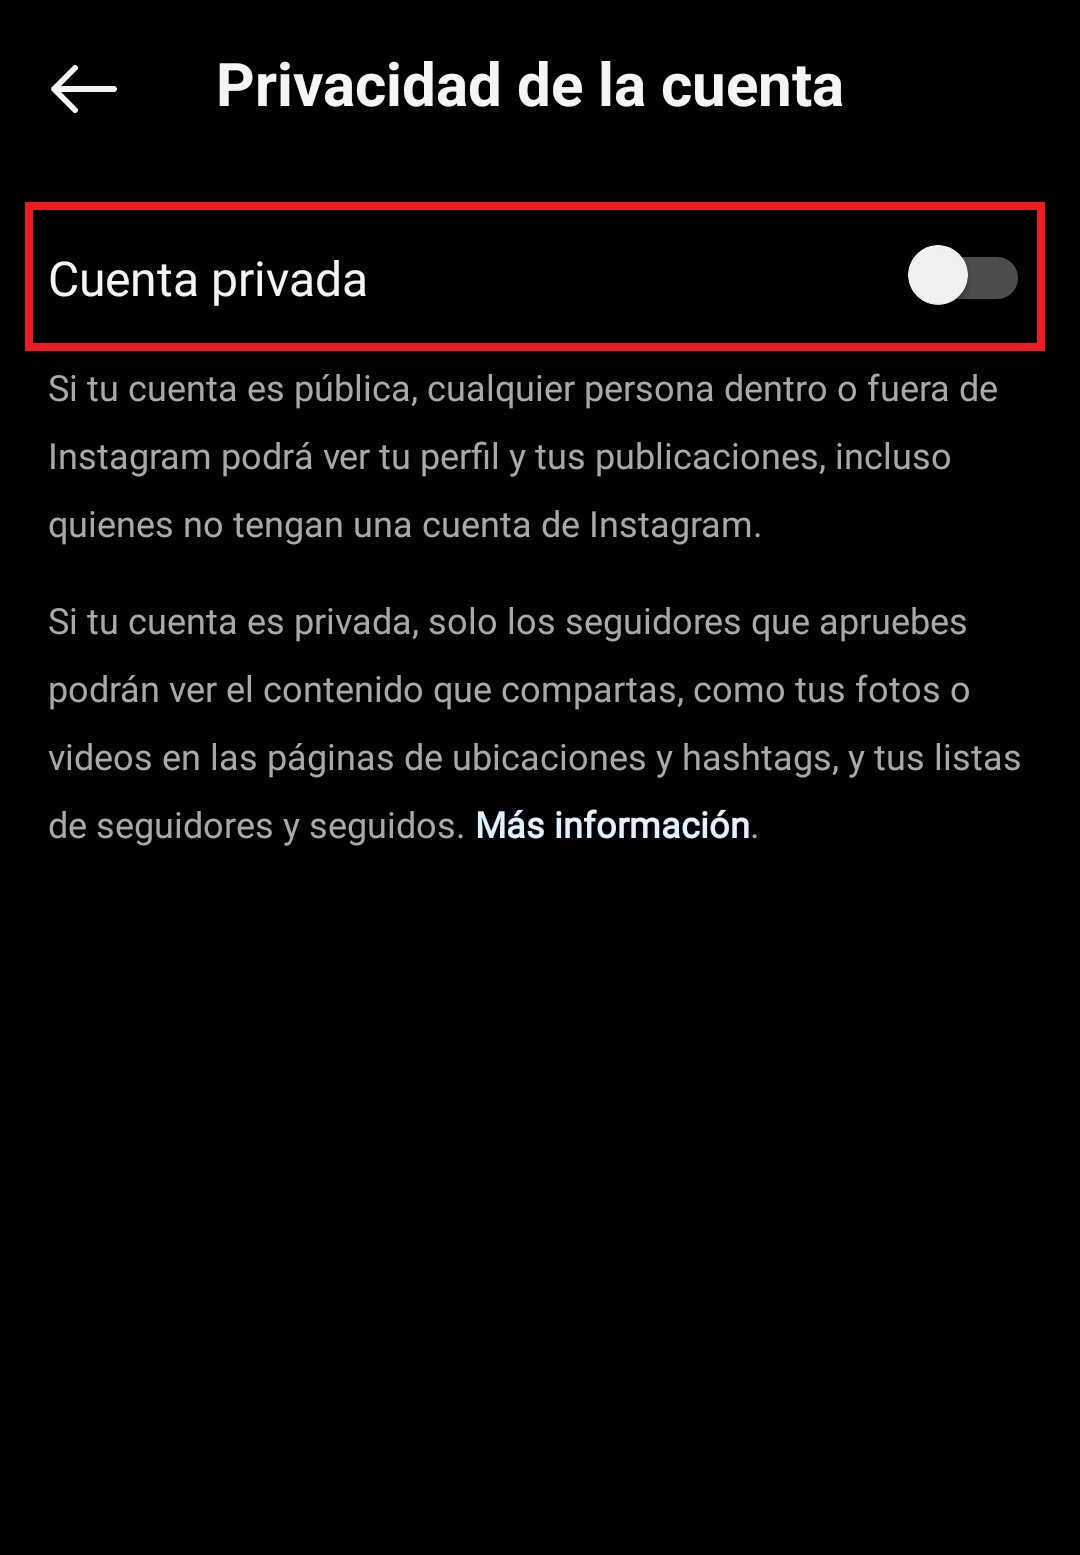 Sección de Configuración - Privacidad dentro de Instagram desde el celular, con la opción para desmarcar la cuenta como privada resaltada